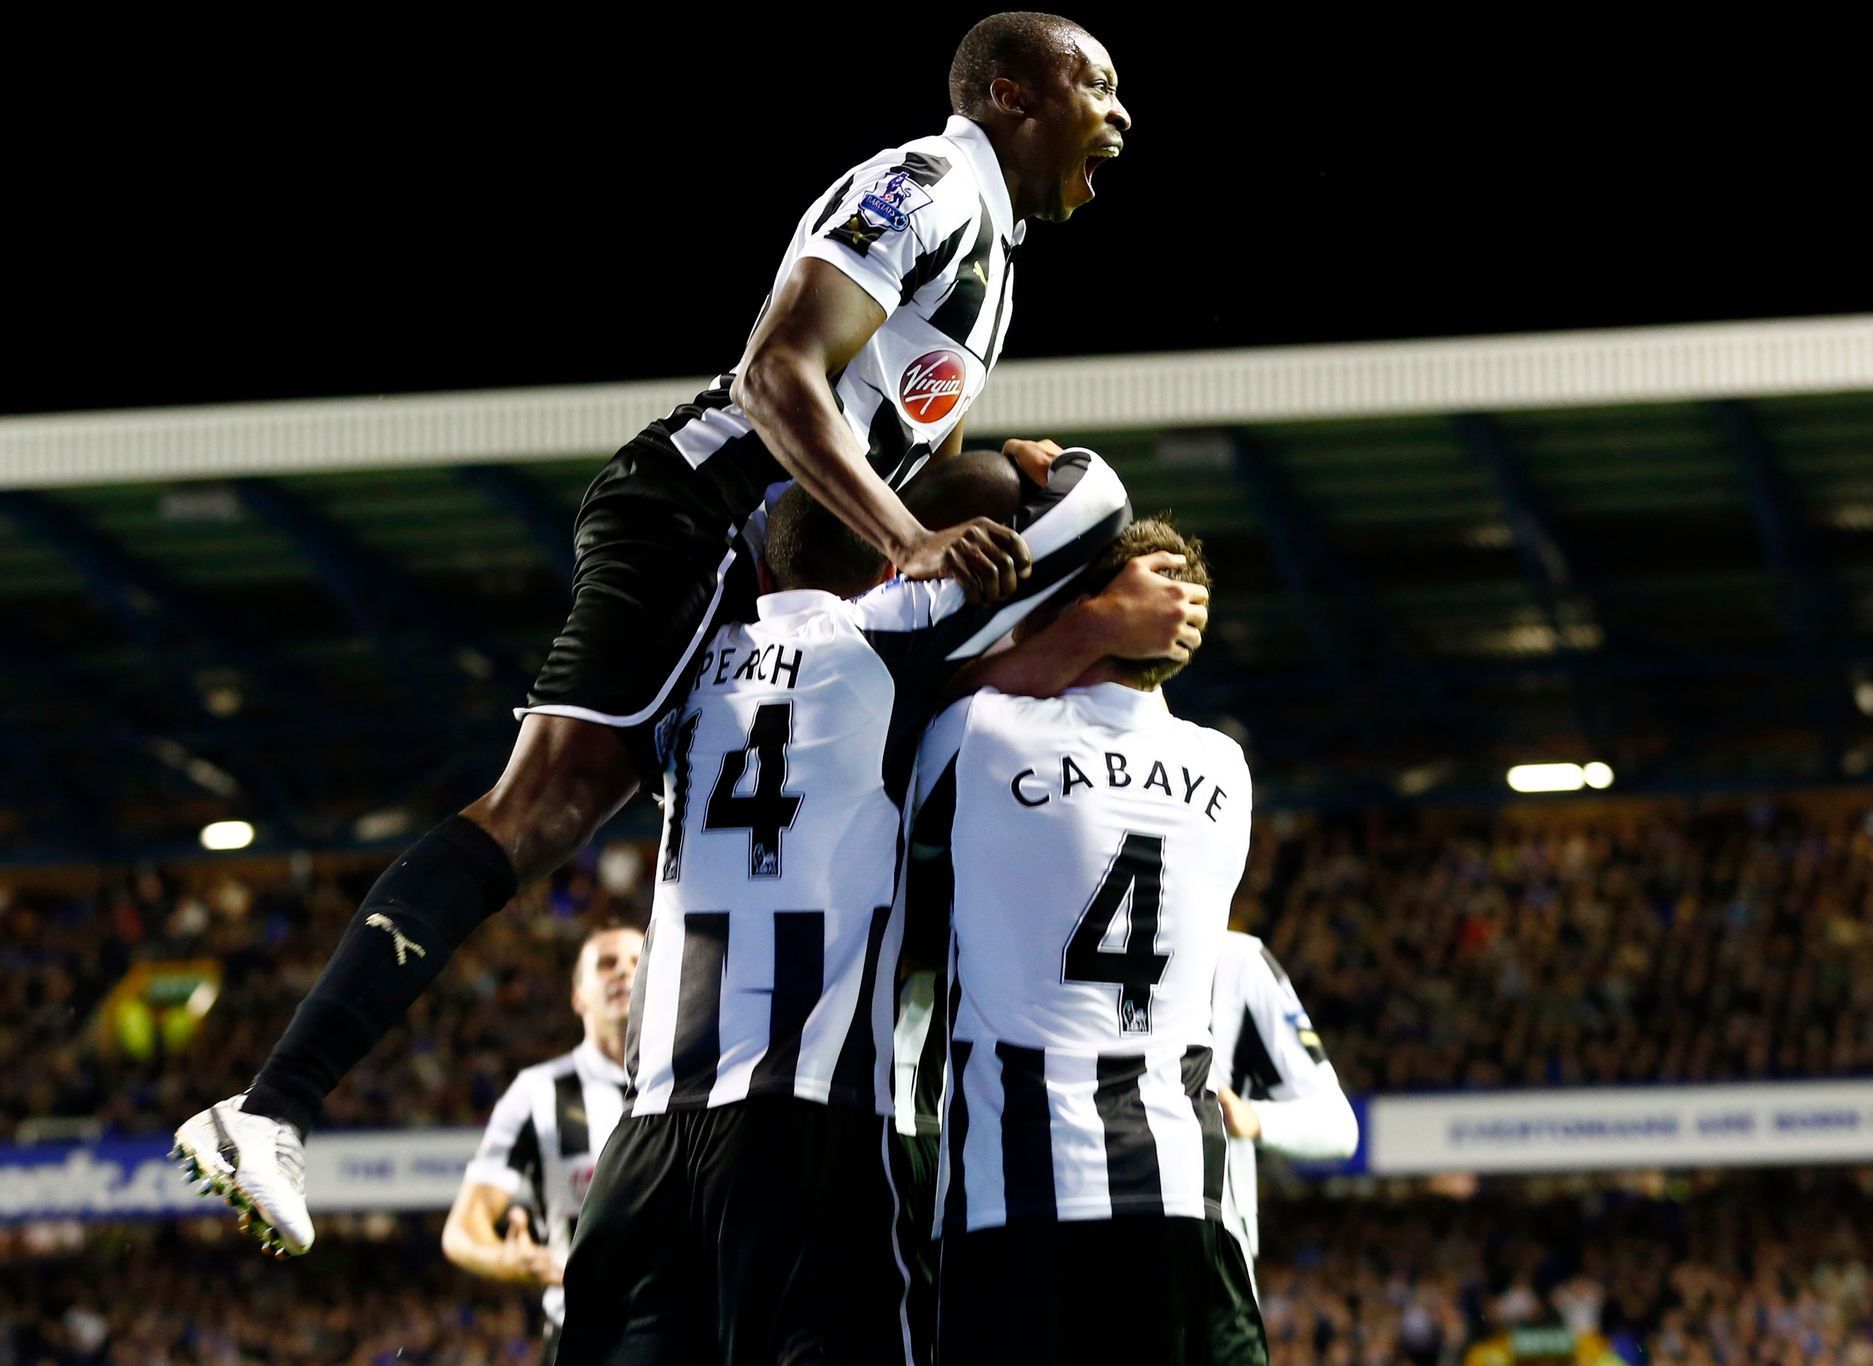 Demba Ba slaví gól v zápase Everton - Newcastle